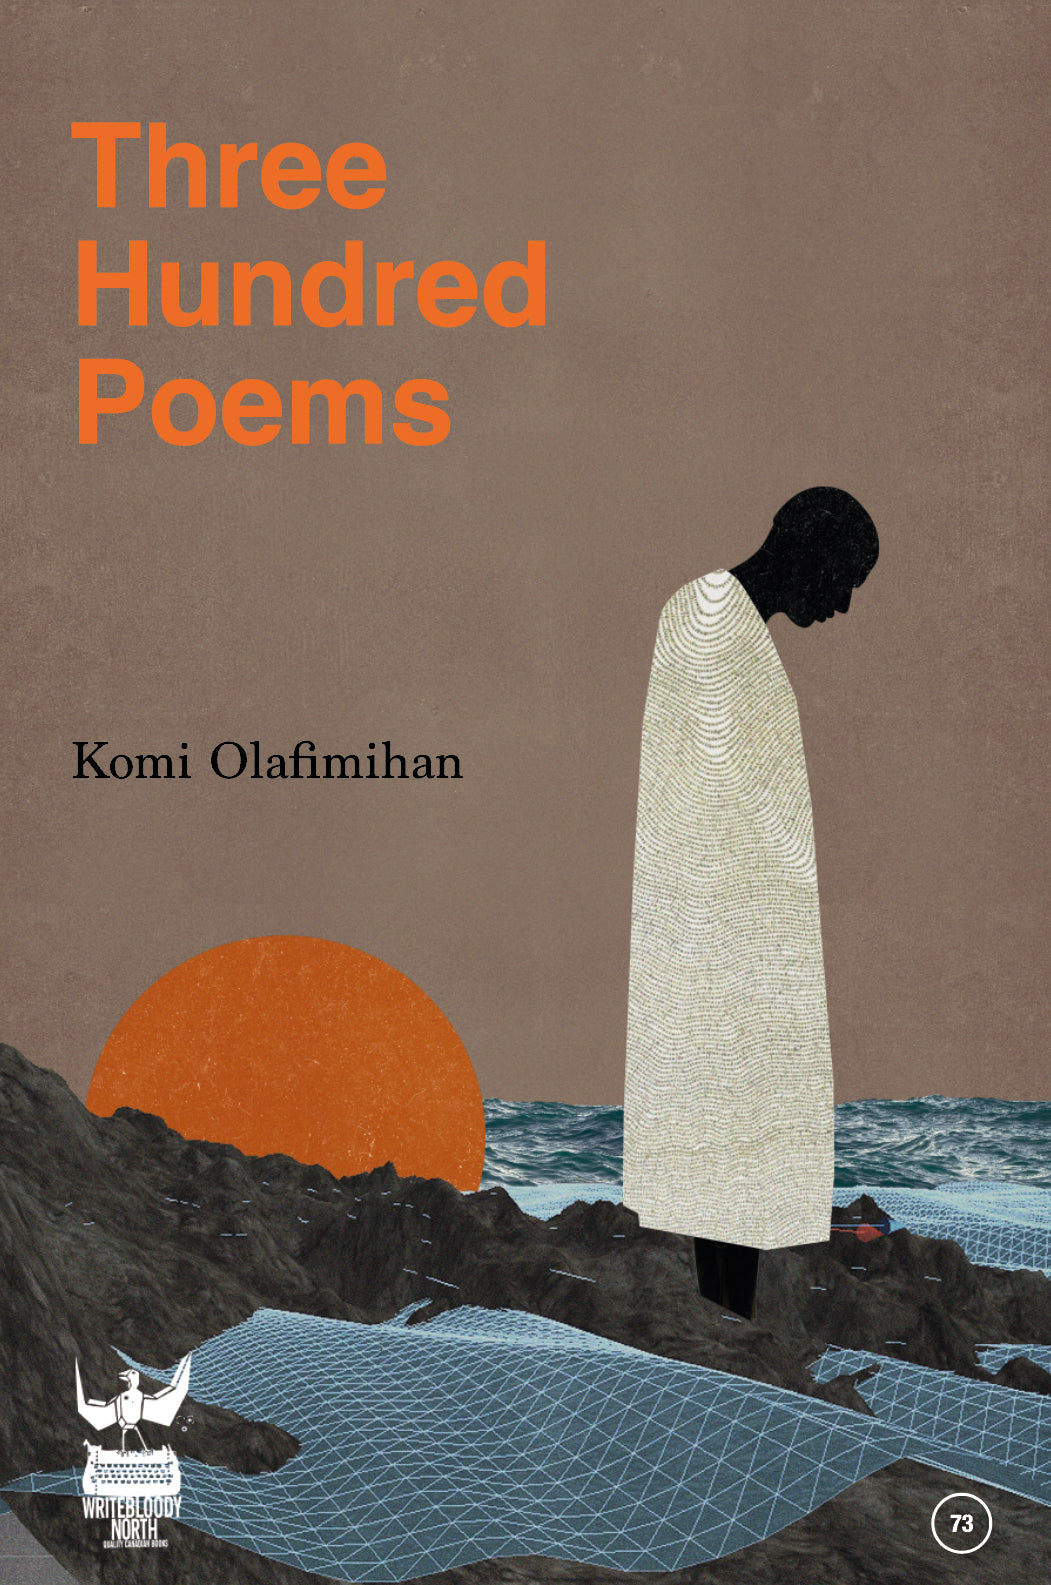 300 Poems by Komi Olafimihan PRE-SALE